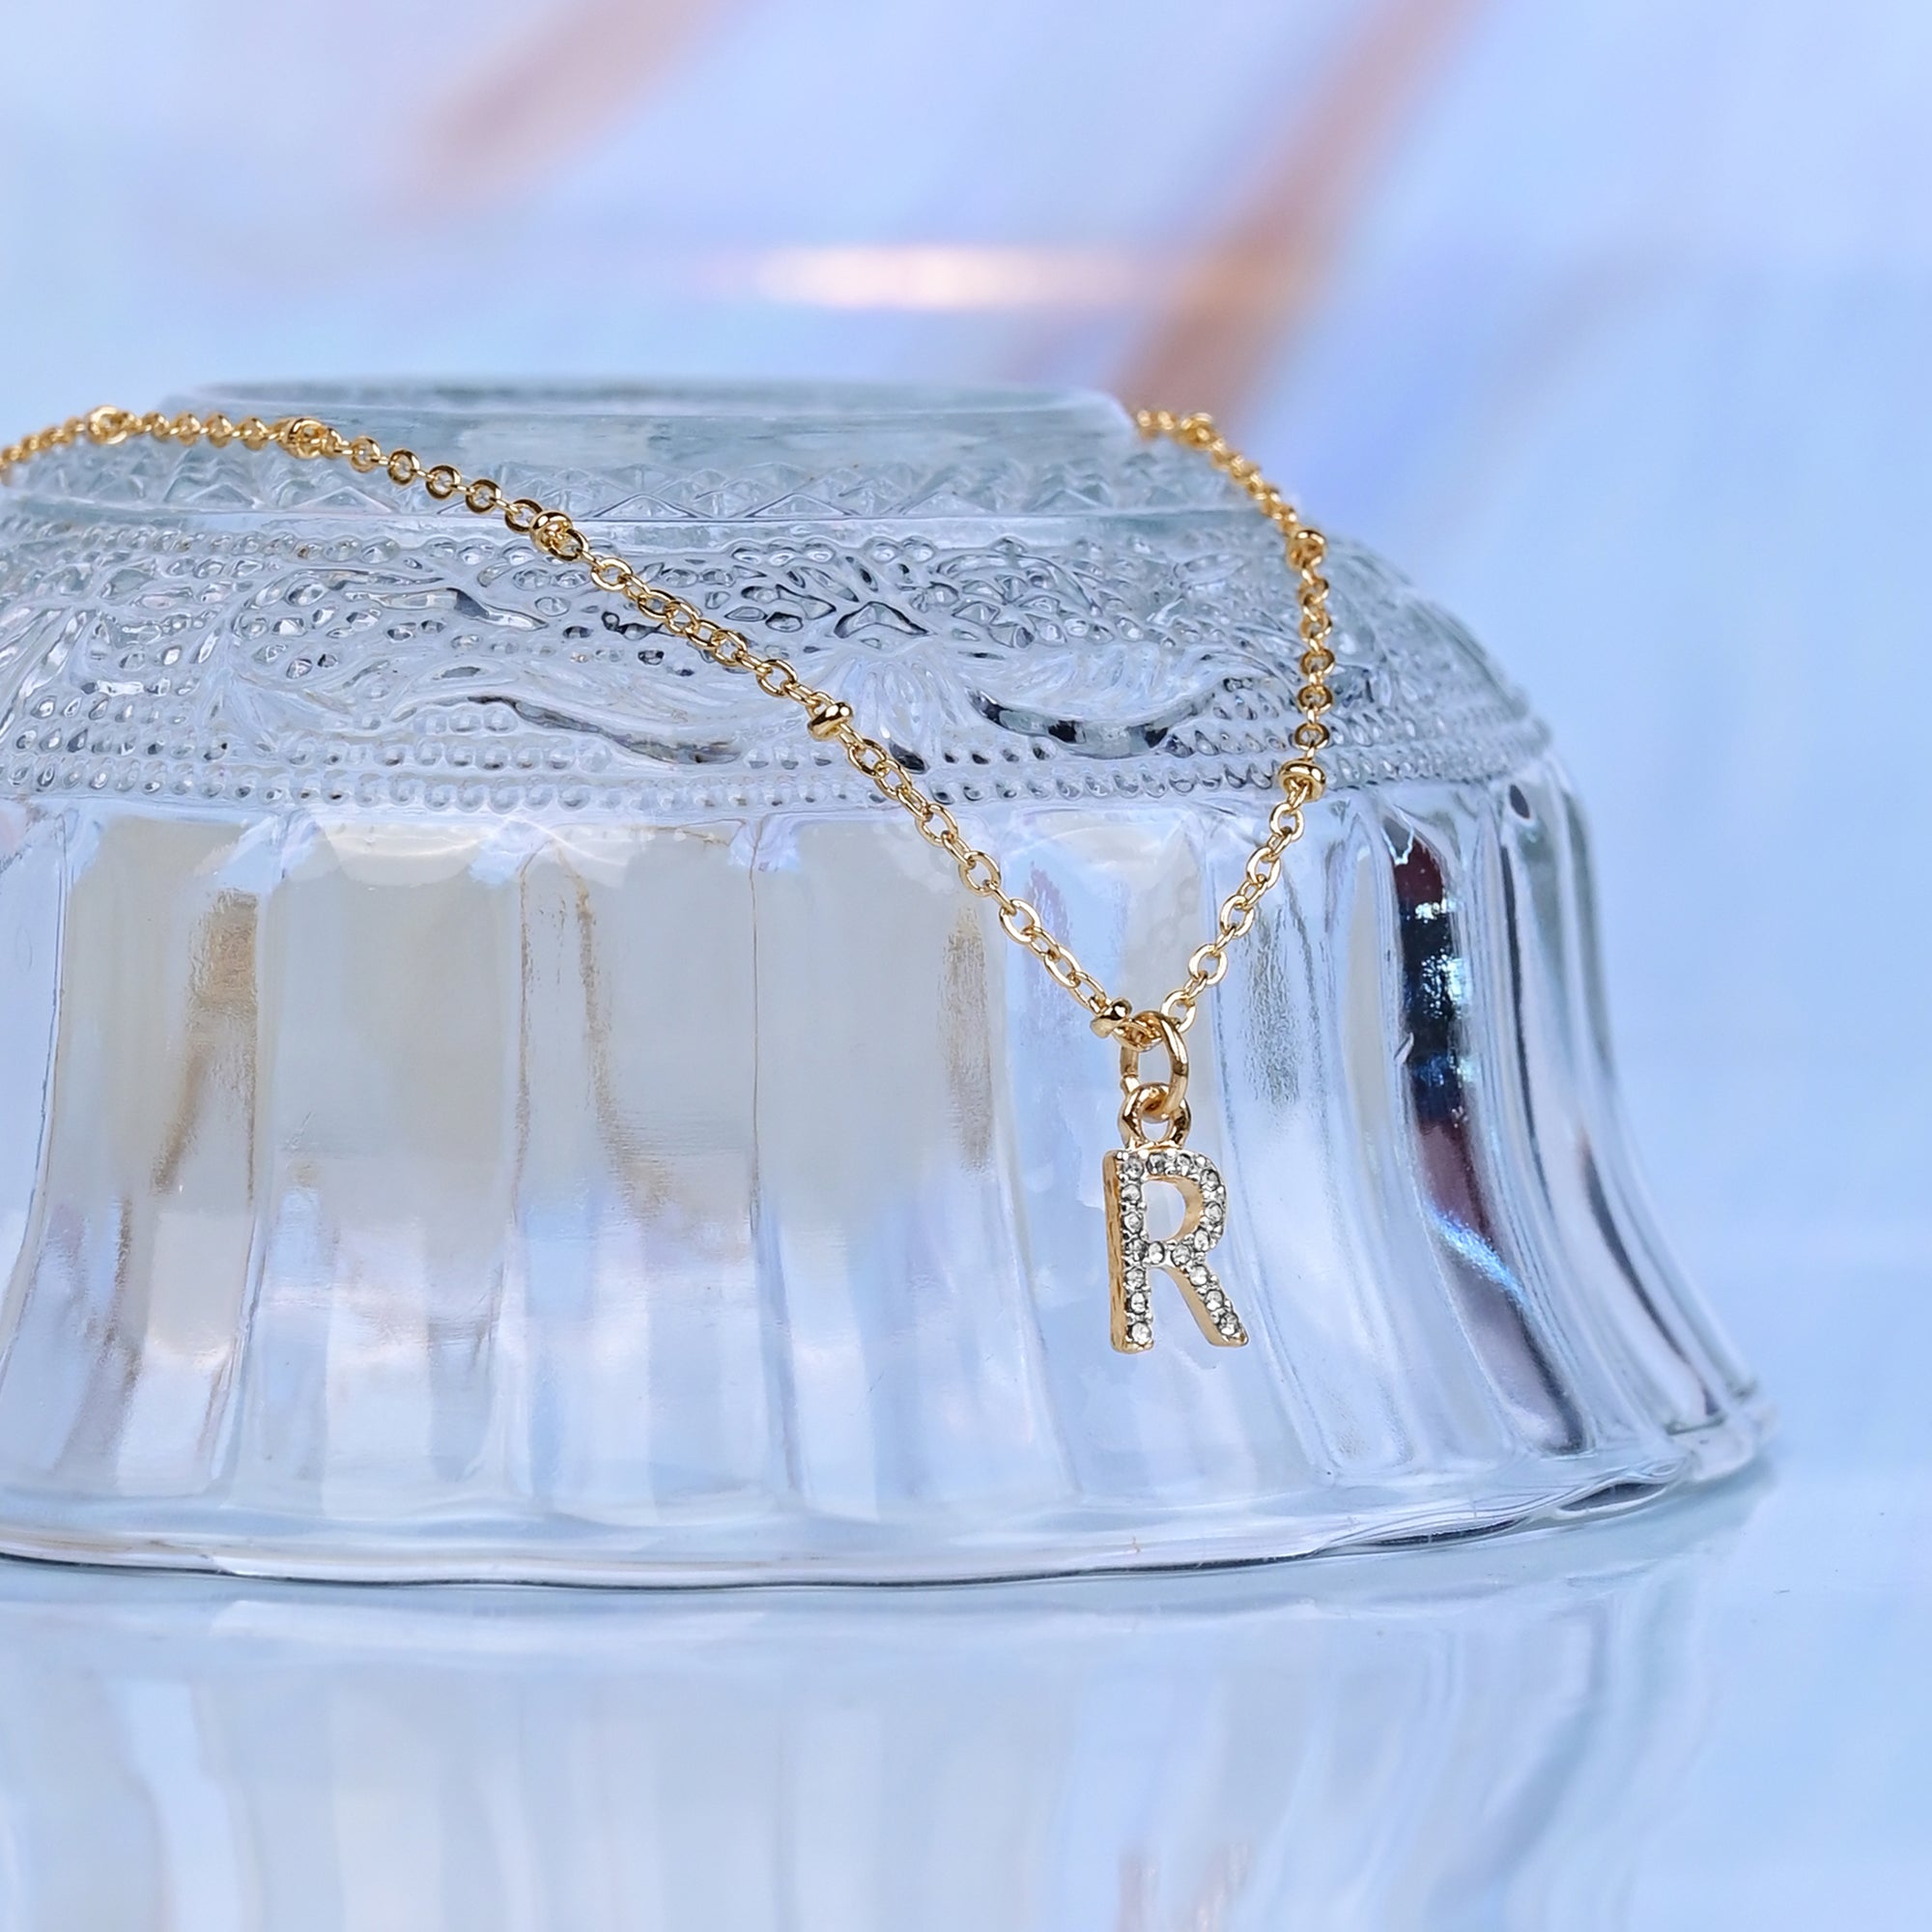 Accessorize London Women's Gold Initial "R" Sparkle Pendant Necklace